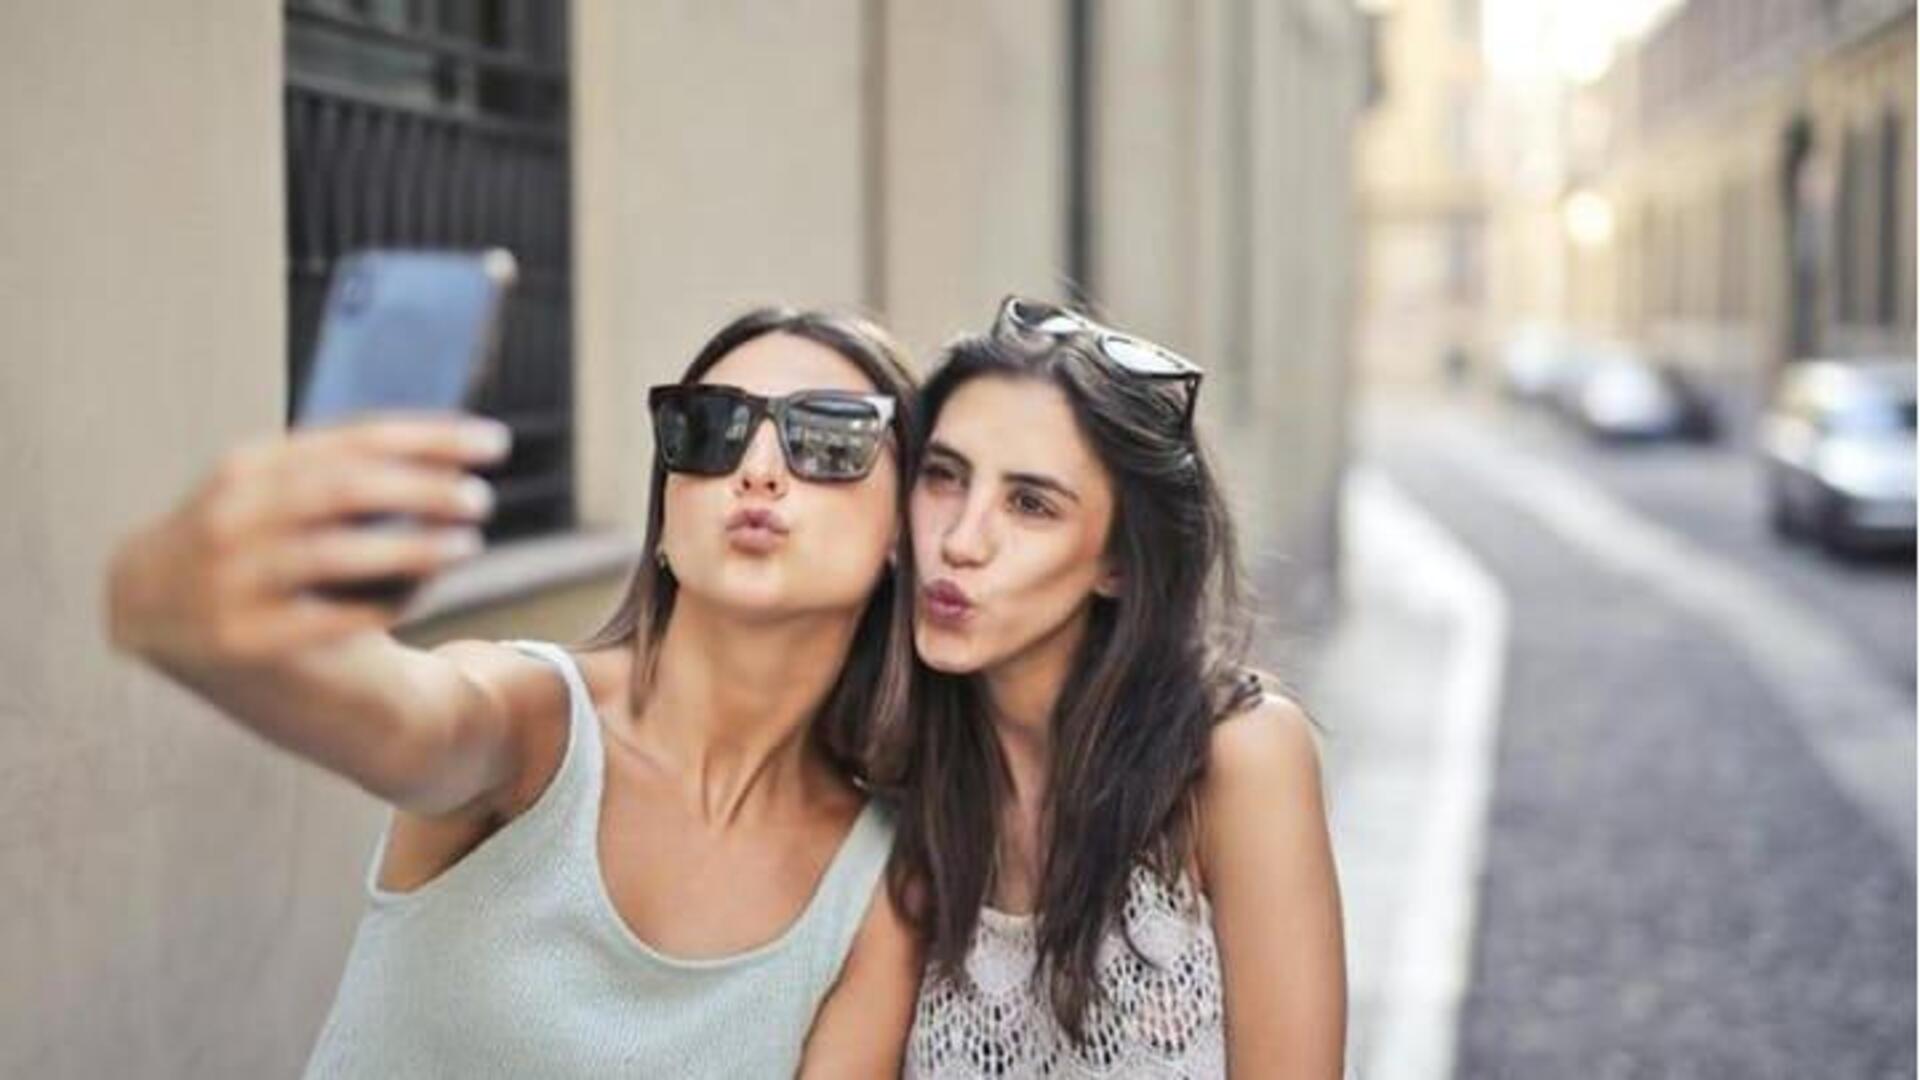 Studi mengungkap hubungan antara foto selfie dan kepribadian seseorang